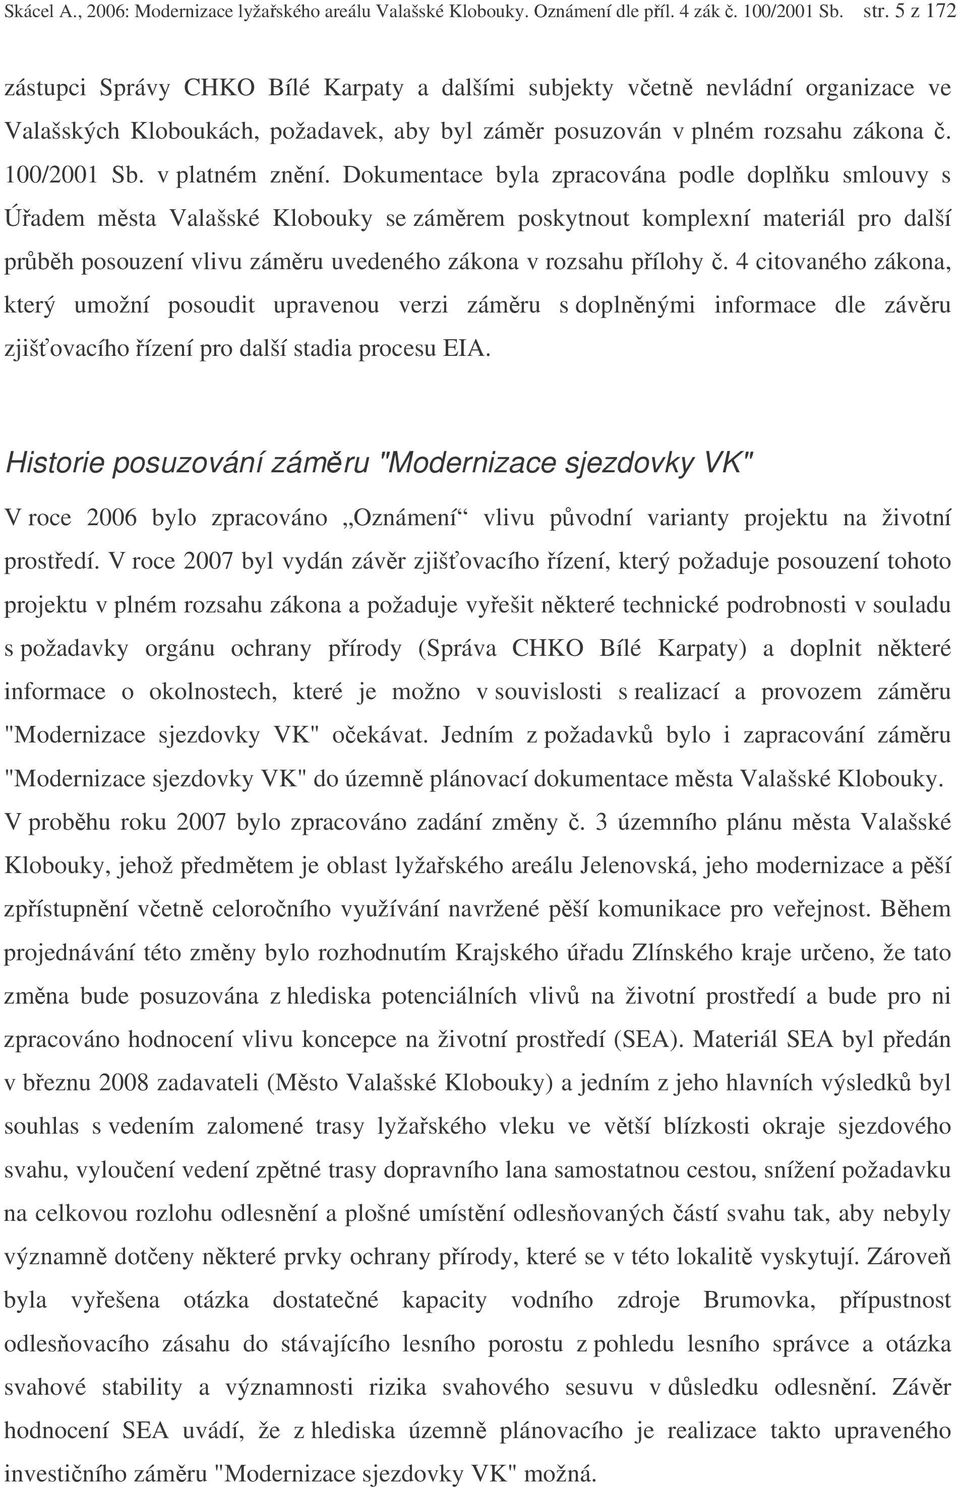 RNDr. Alexander Skácel, CSc., - Aquakon, Prkopnická 24, Ostrava I: tel.: -  PDF Free Download